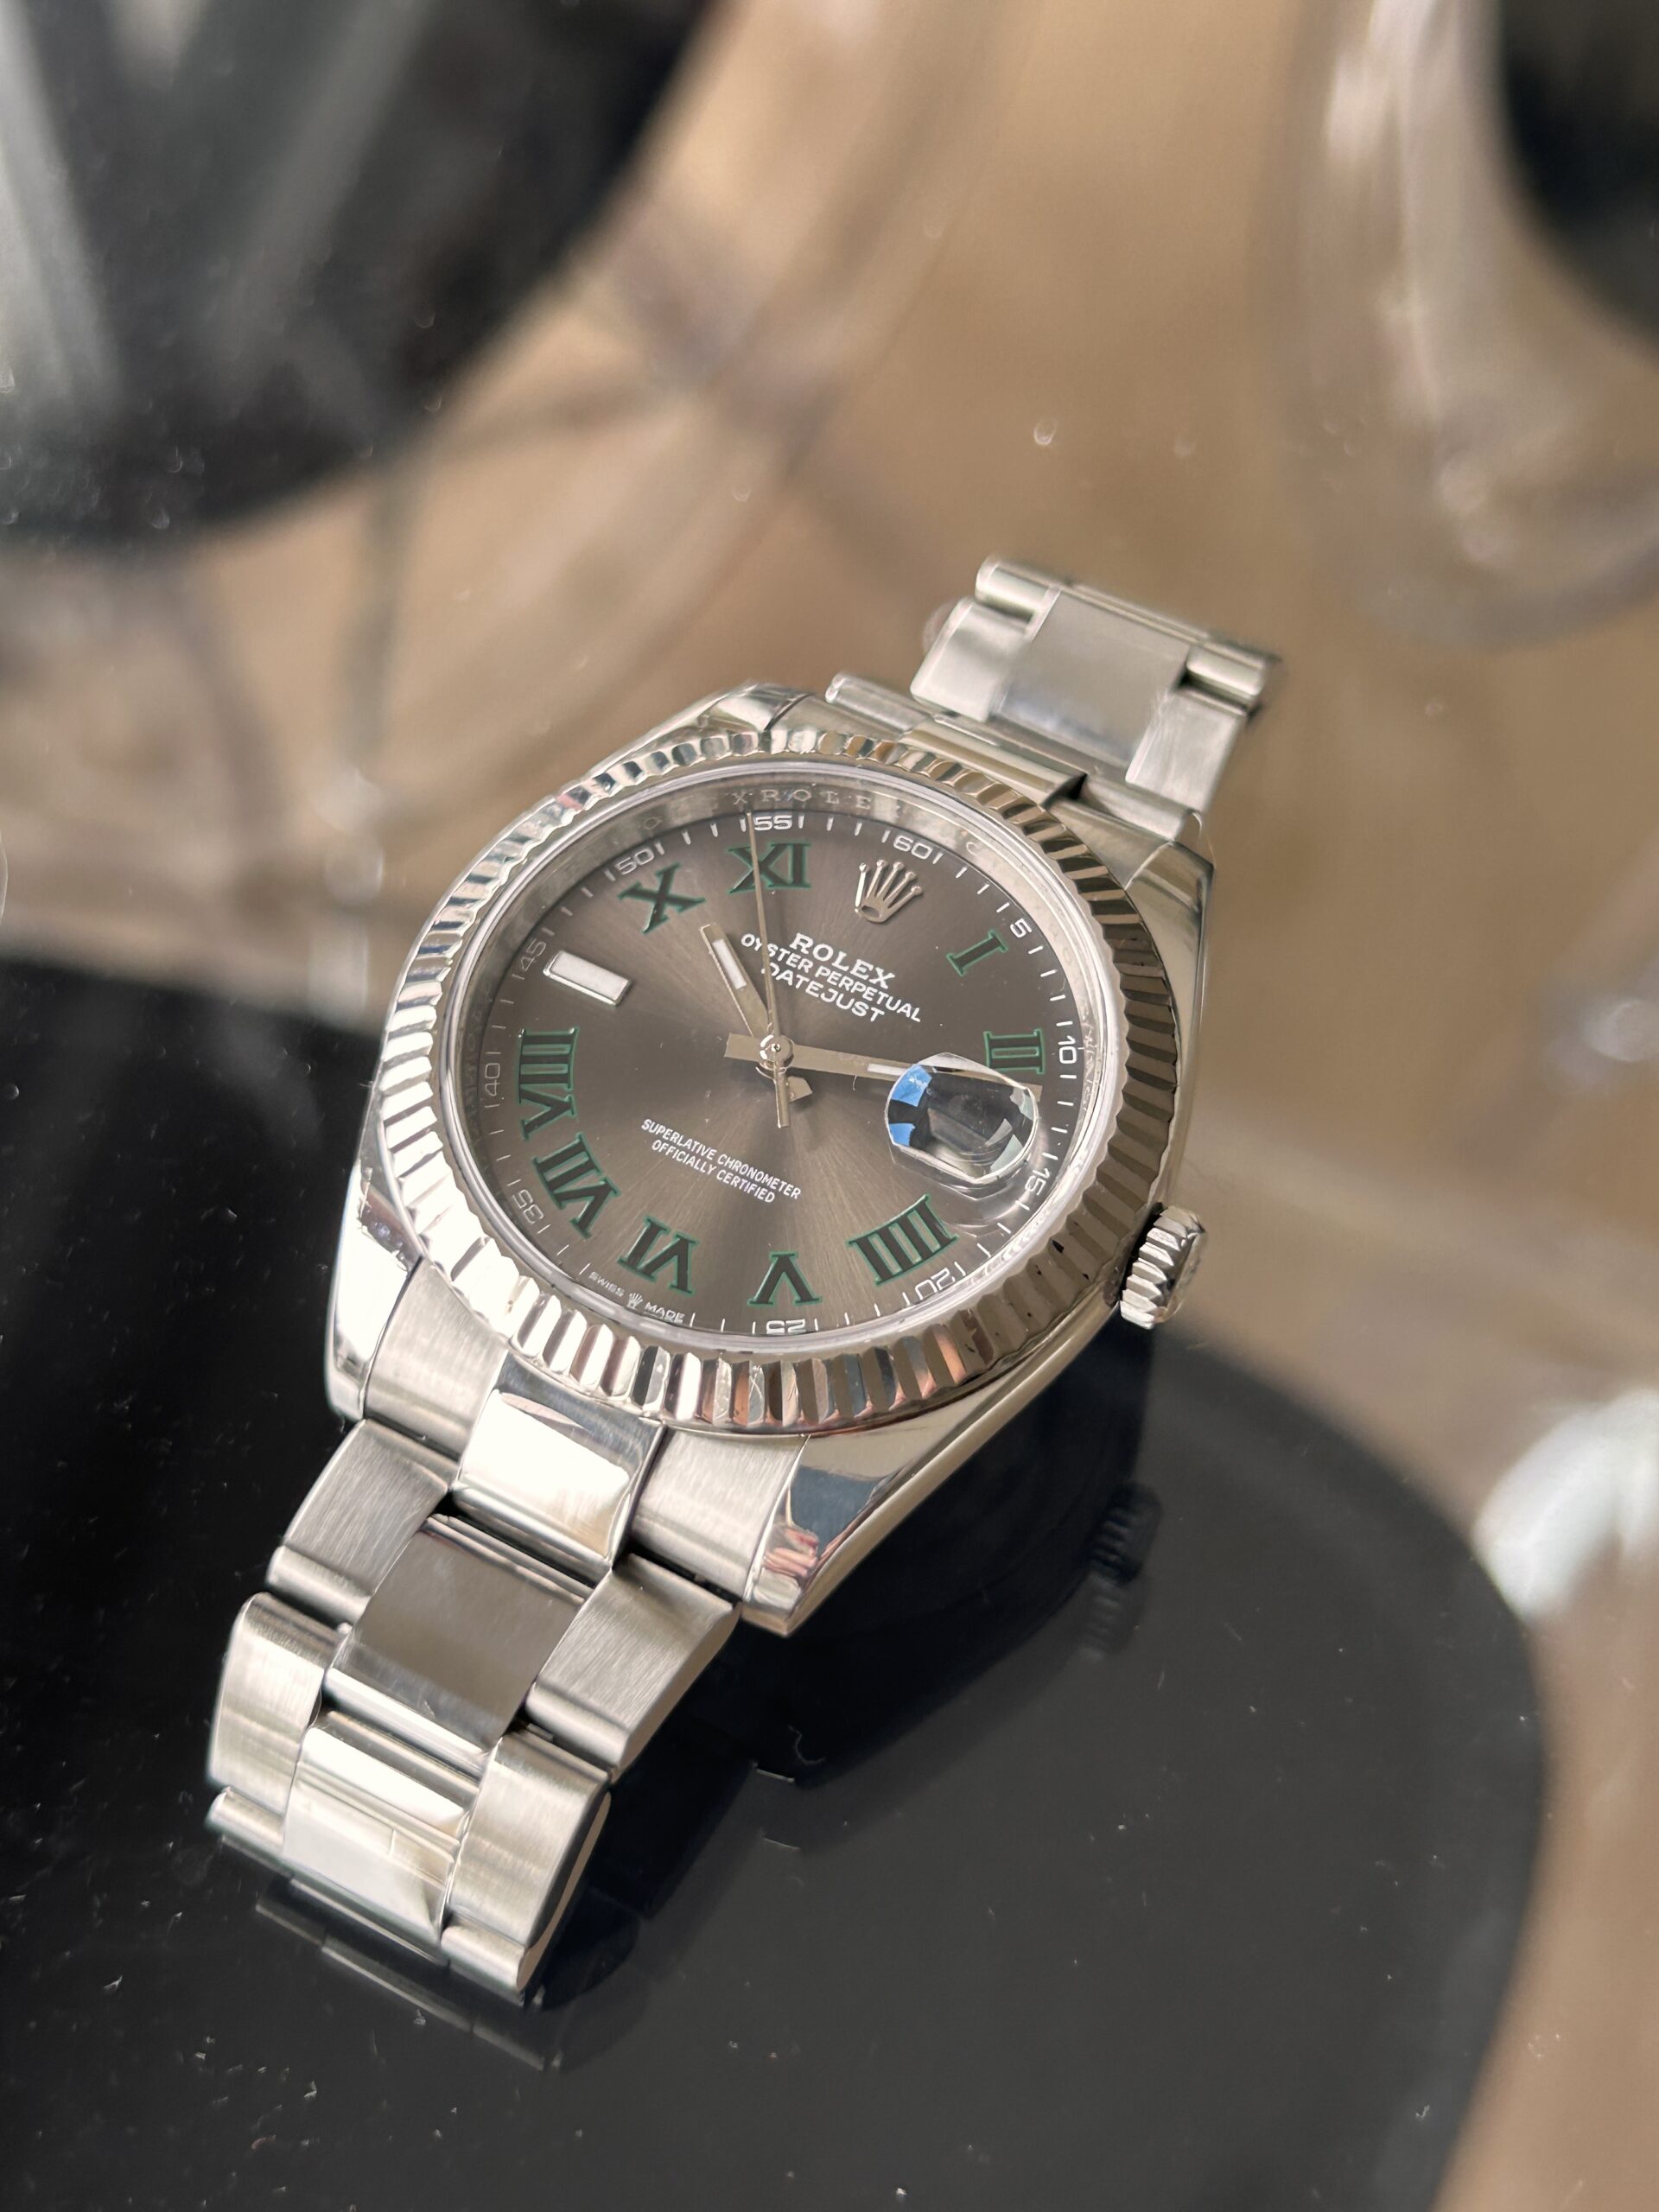 Vender reloj Rolex con tasación gratis